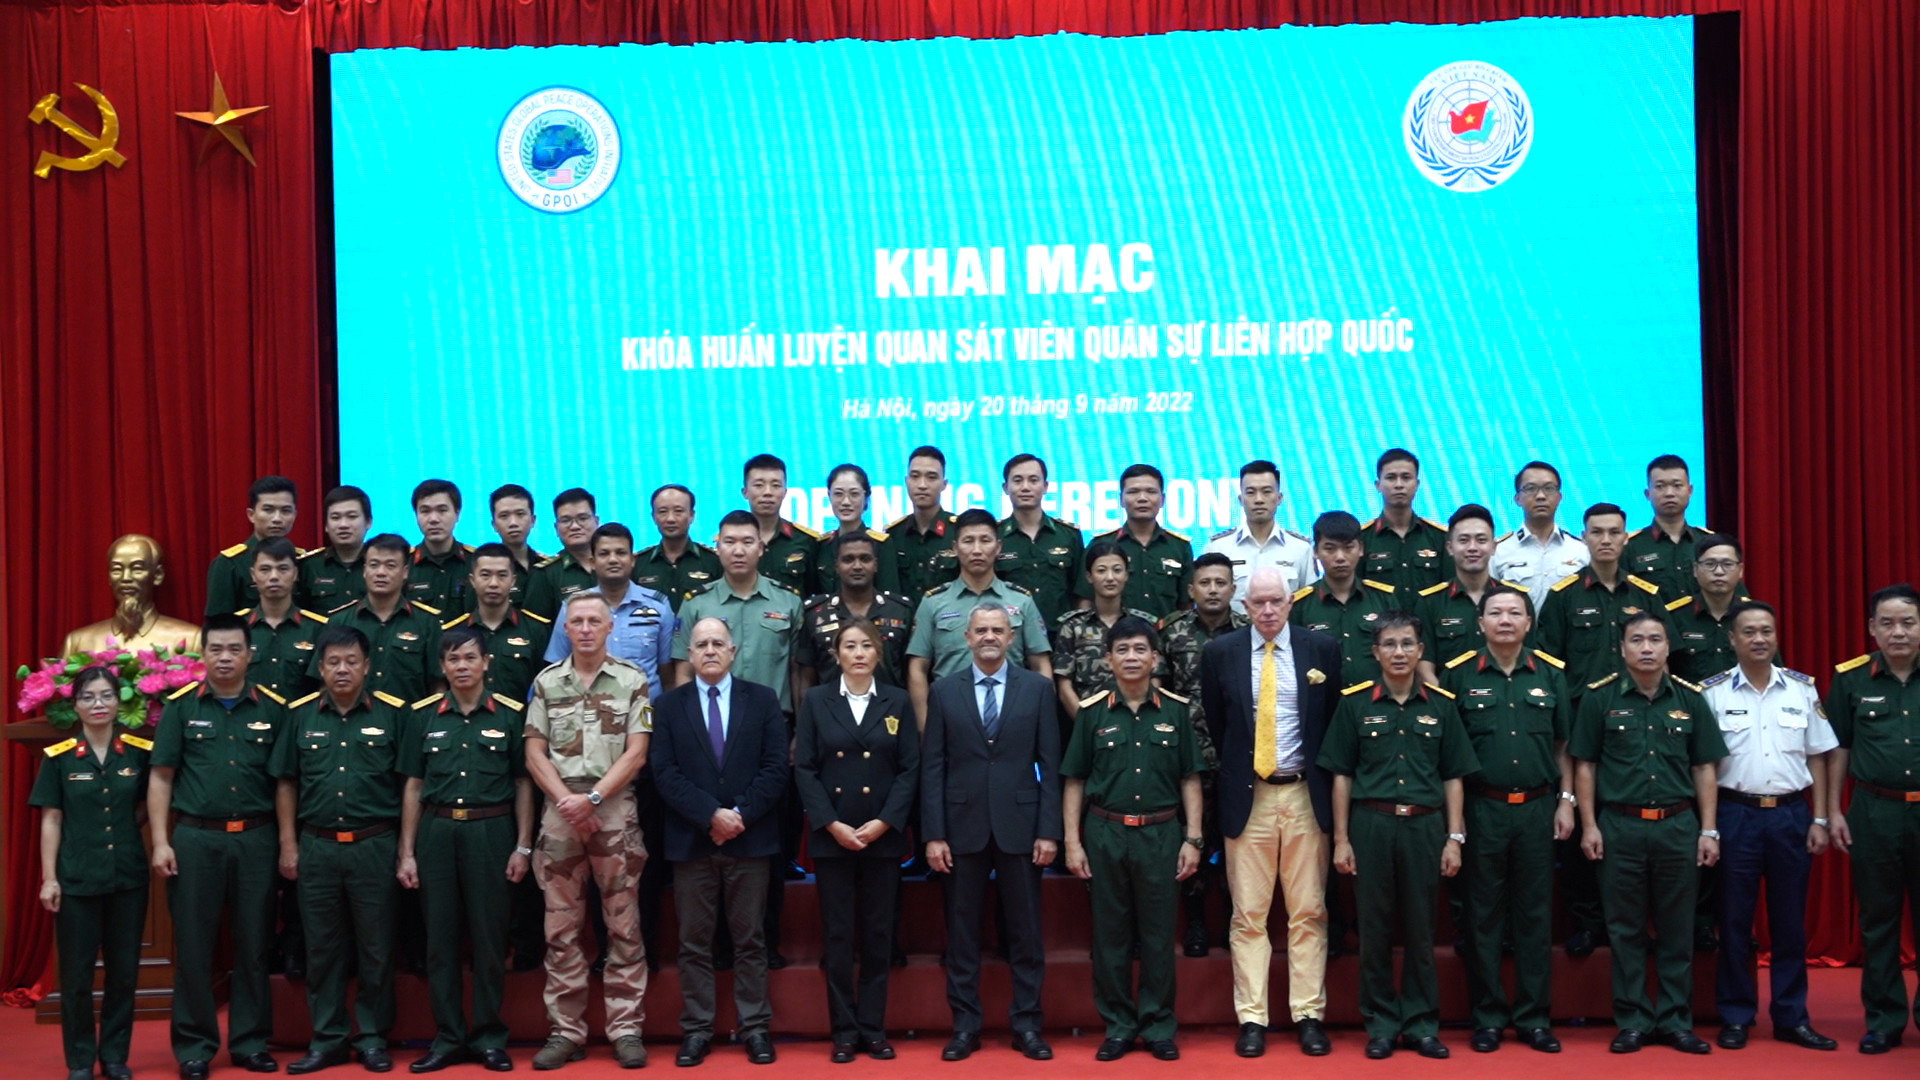 Cục Gìn giữ hòa bình Việt Nam khai mạc khóa huấn luyện quan sát viên quân sự Liên hợp quốc